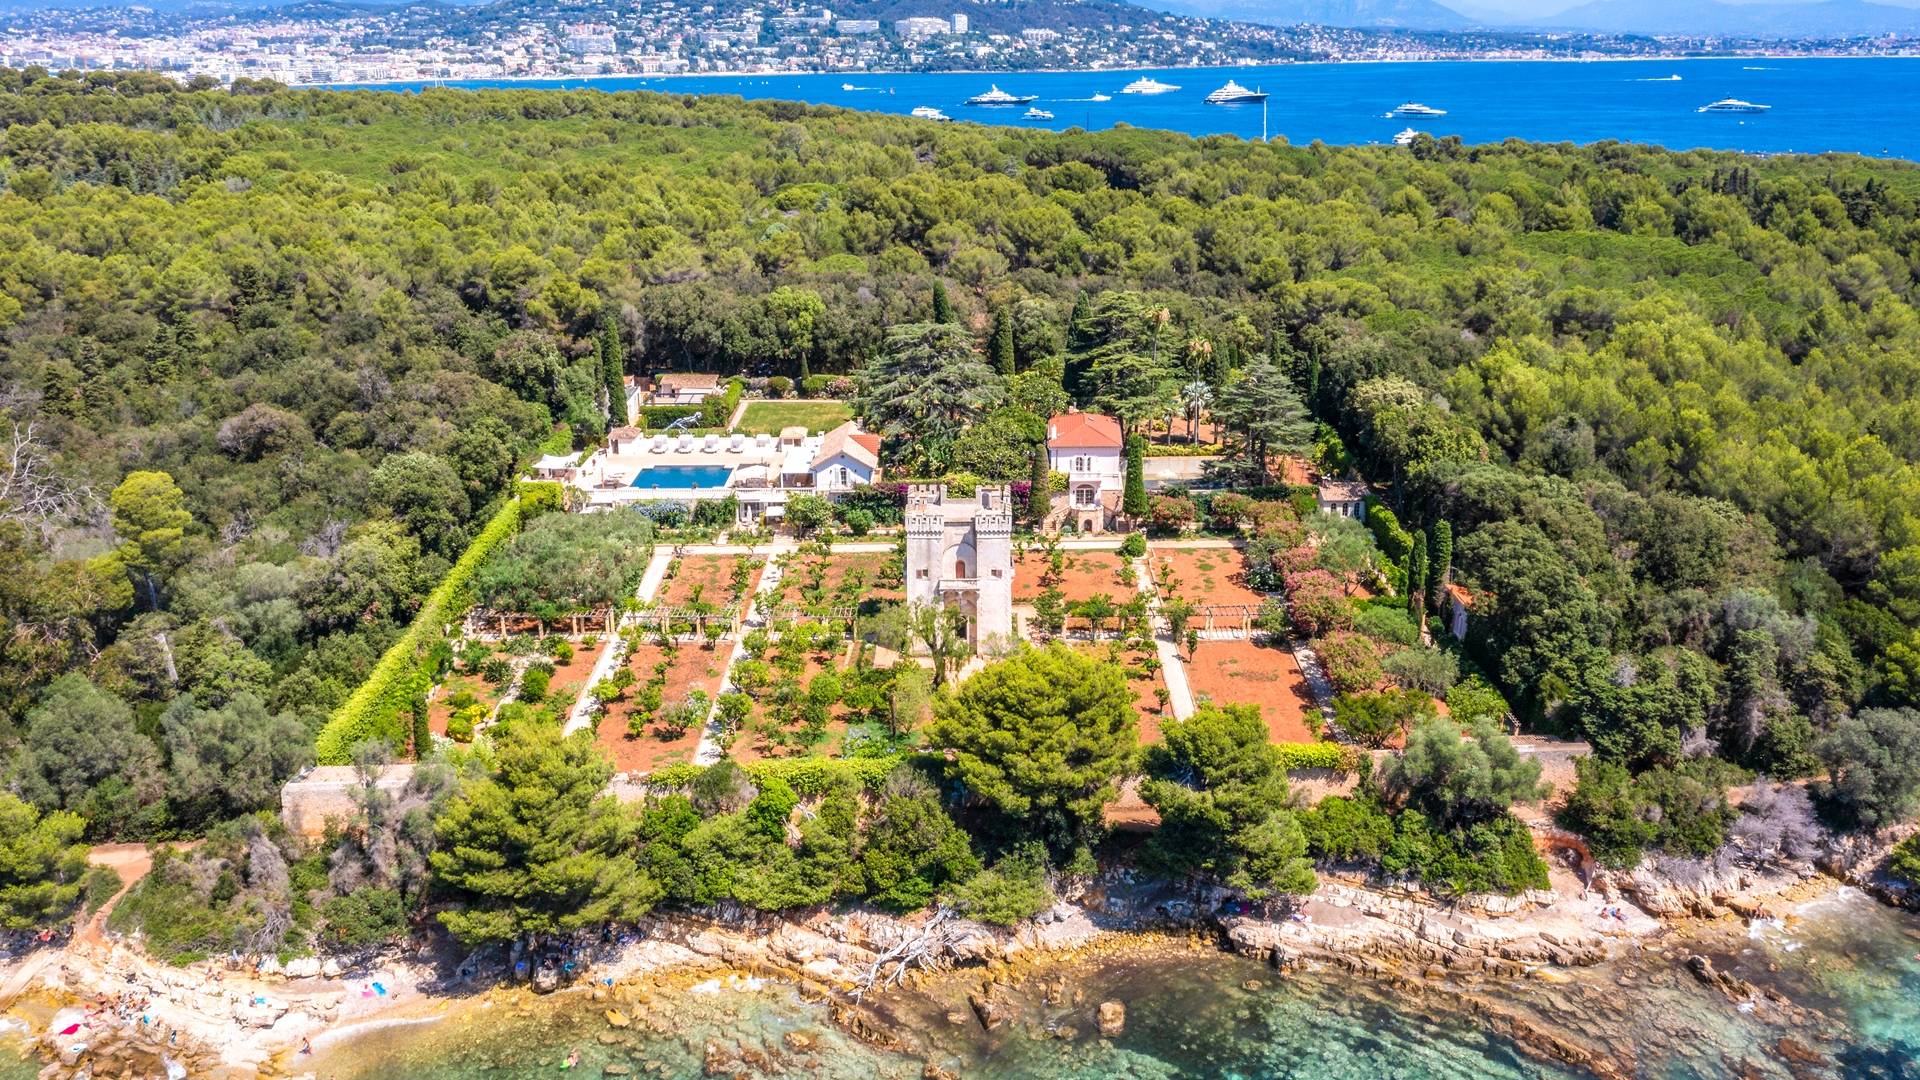 Villa Le Grand Jardin Cannes | By UniqueVillas